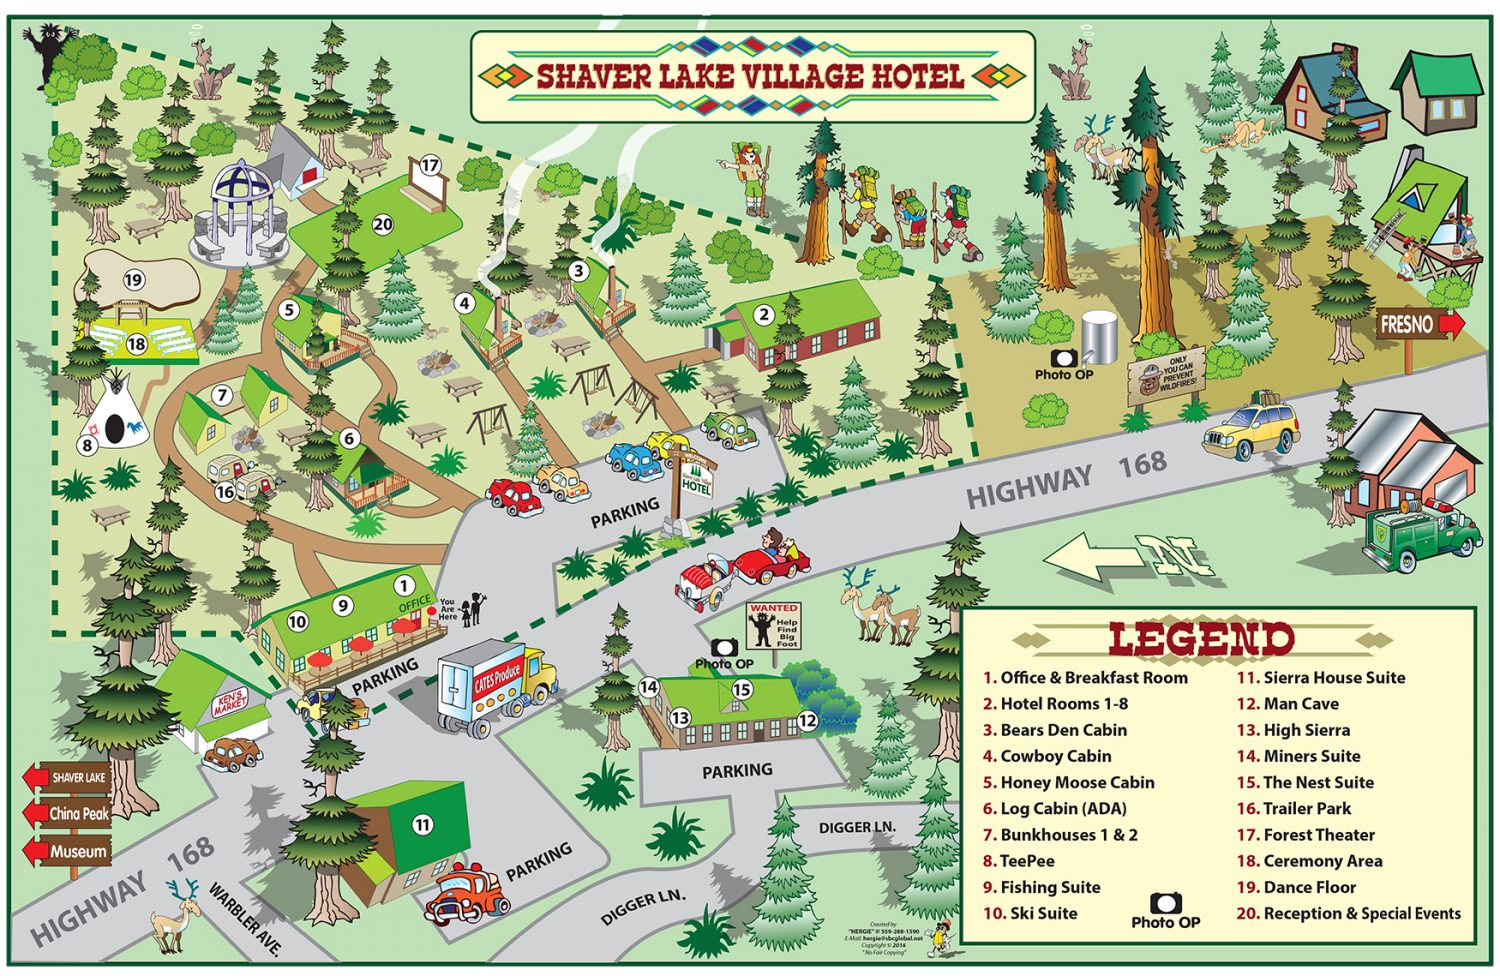 Shaver Lake Village Hotel Property Map - Shaver Lake Village Hotel - Shaver Lake California Map